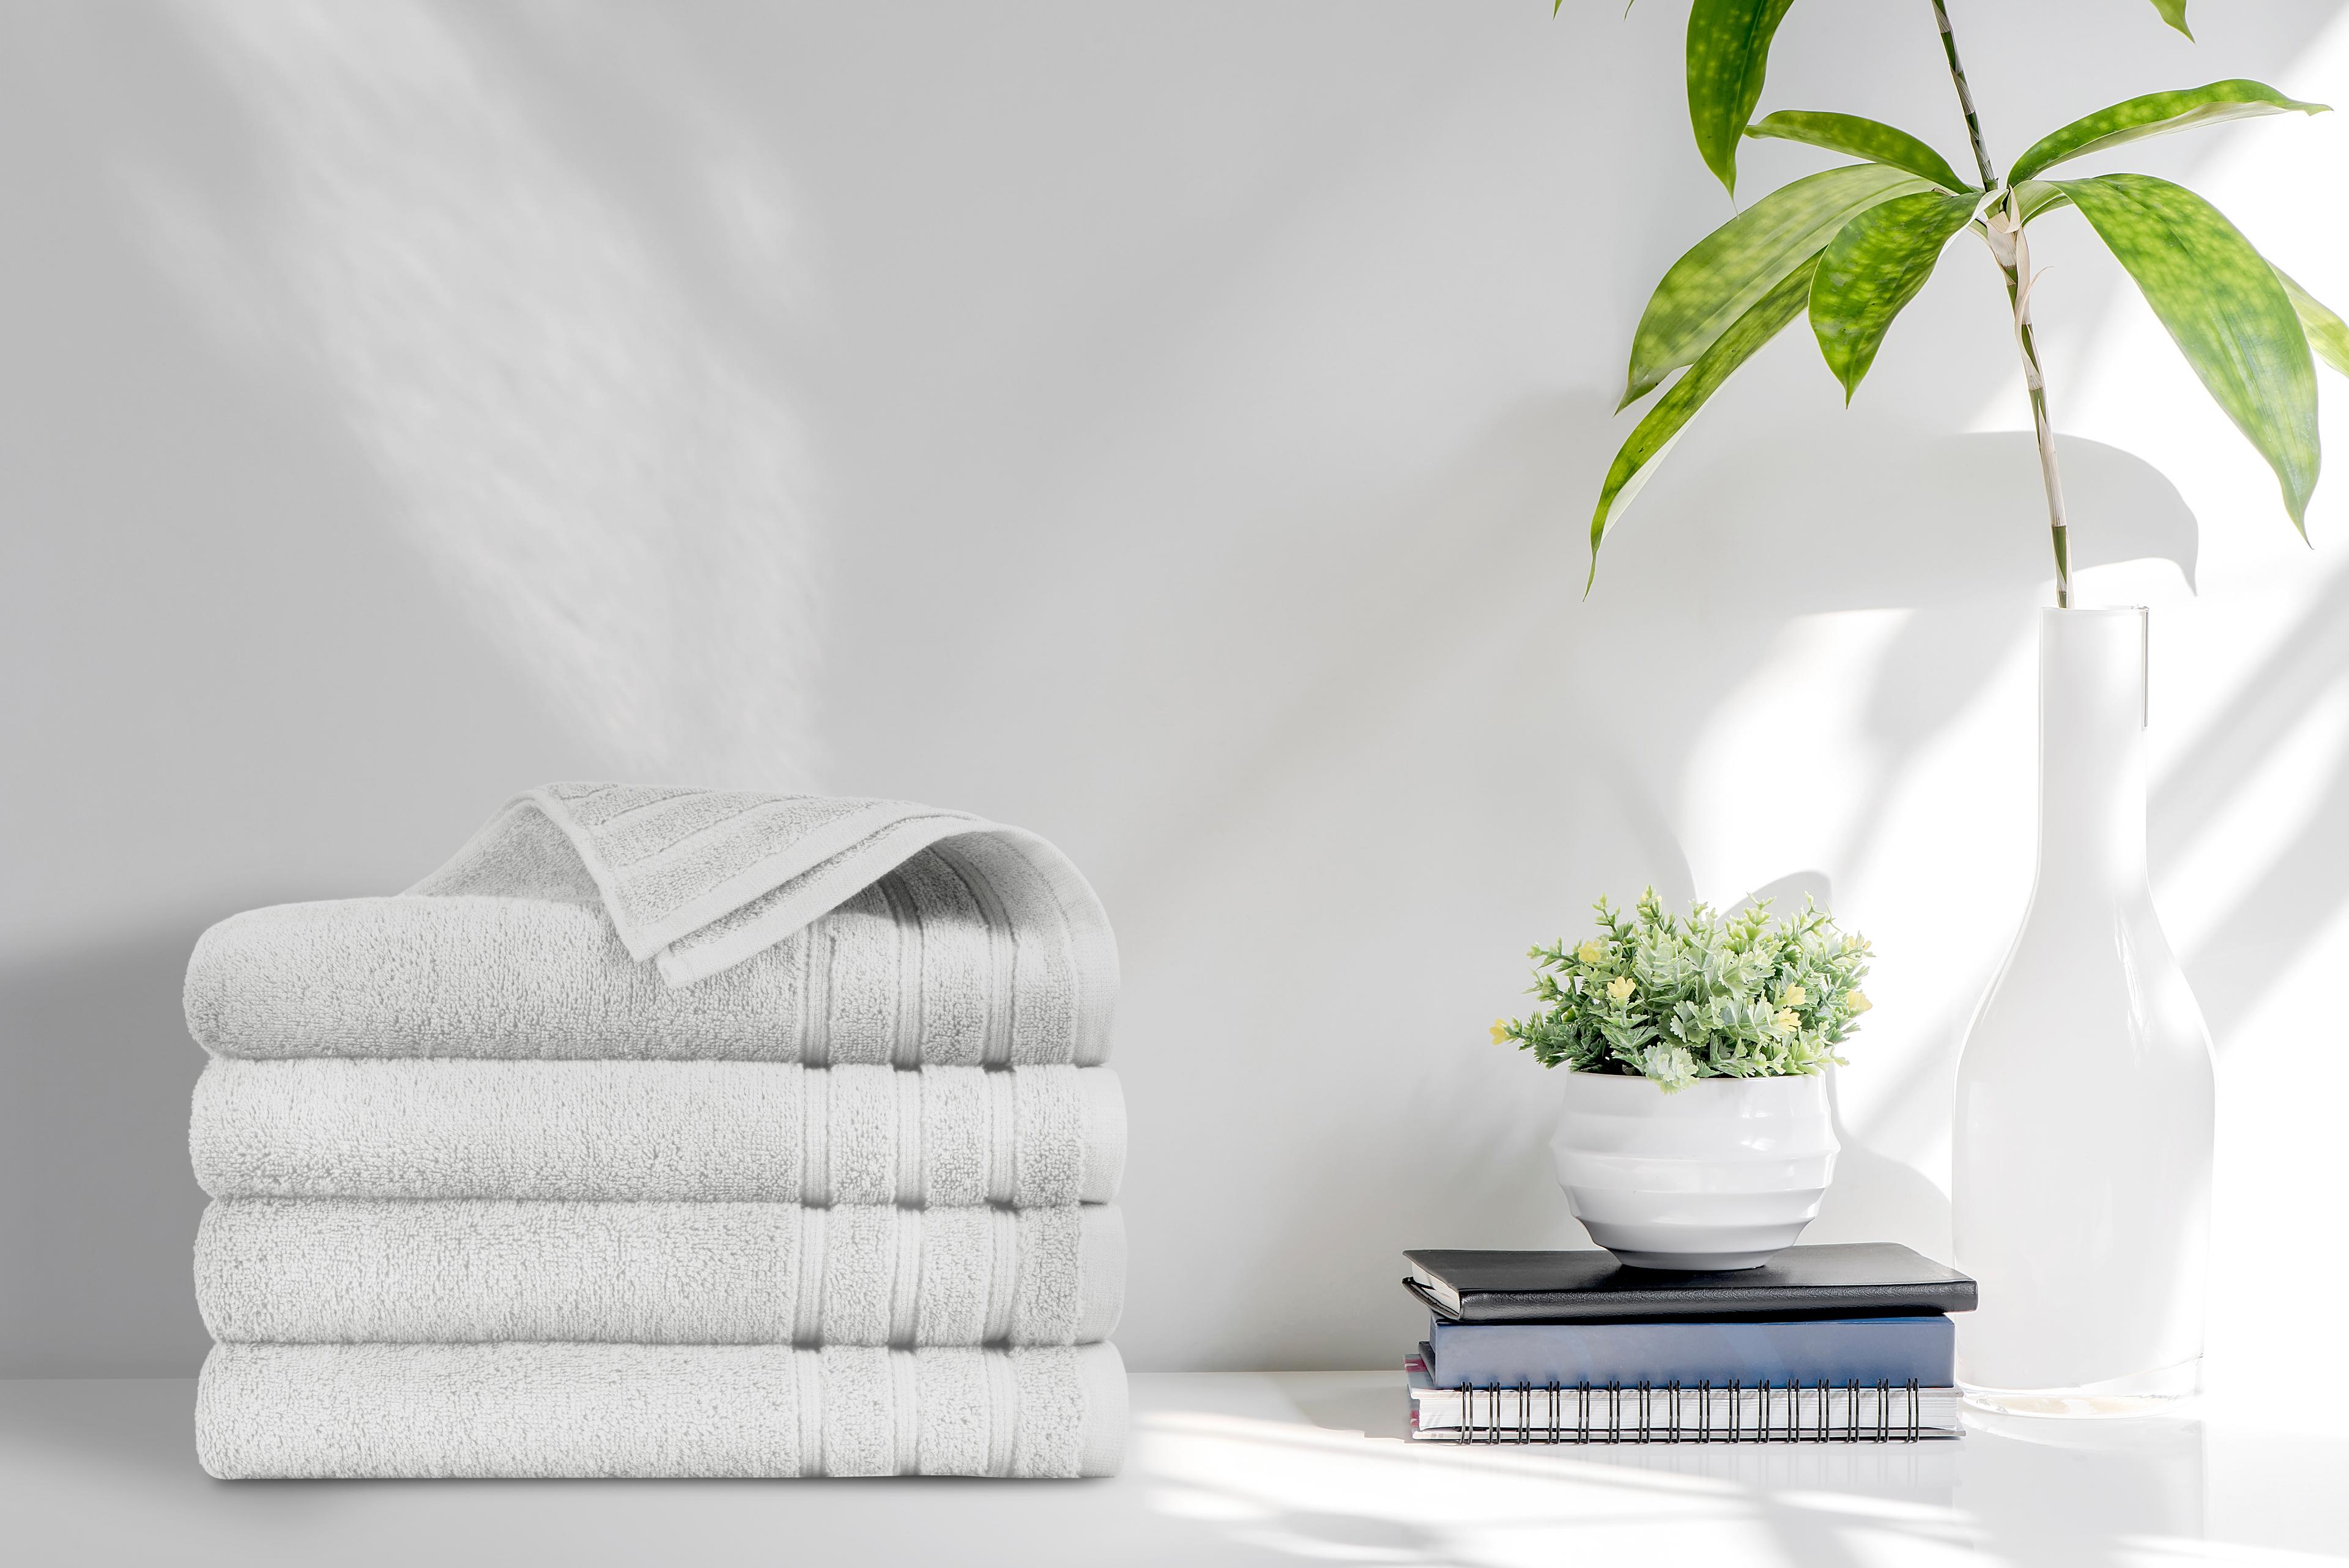 Set van 6 luxe handdoeken taupe EMSA Bedding (50 x 100 cm)